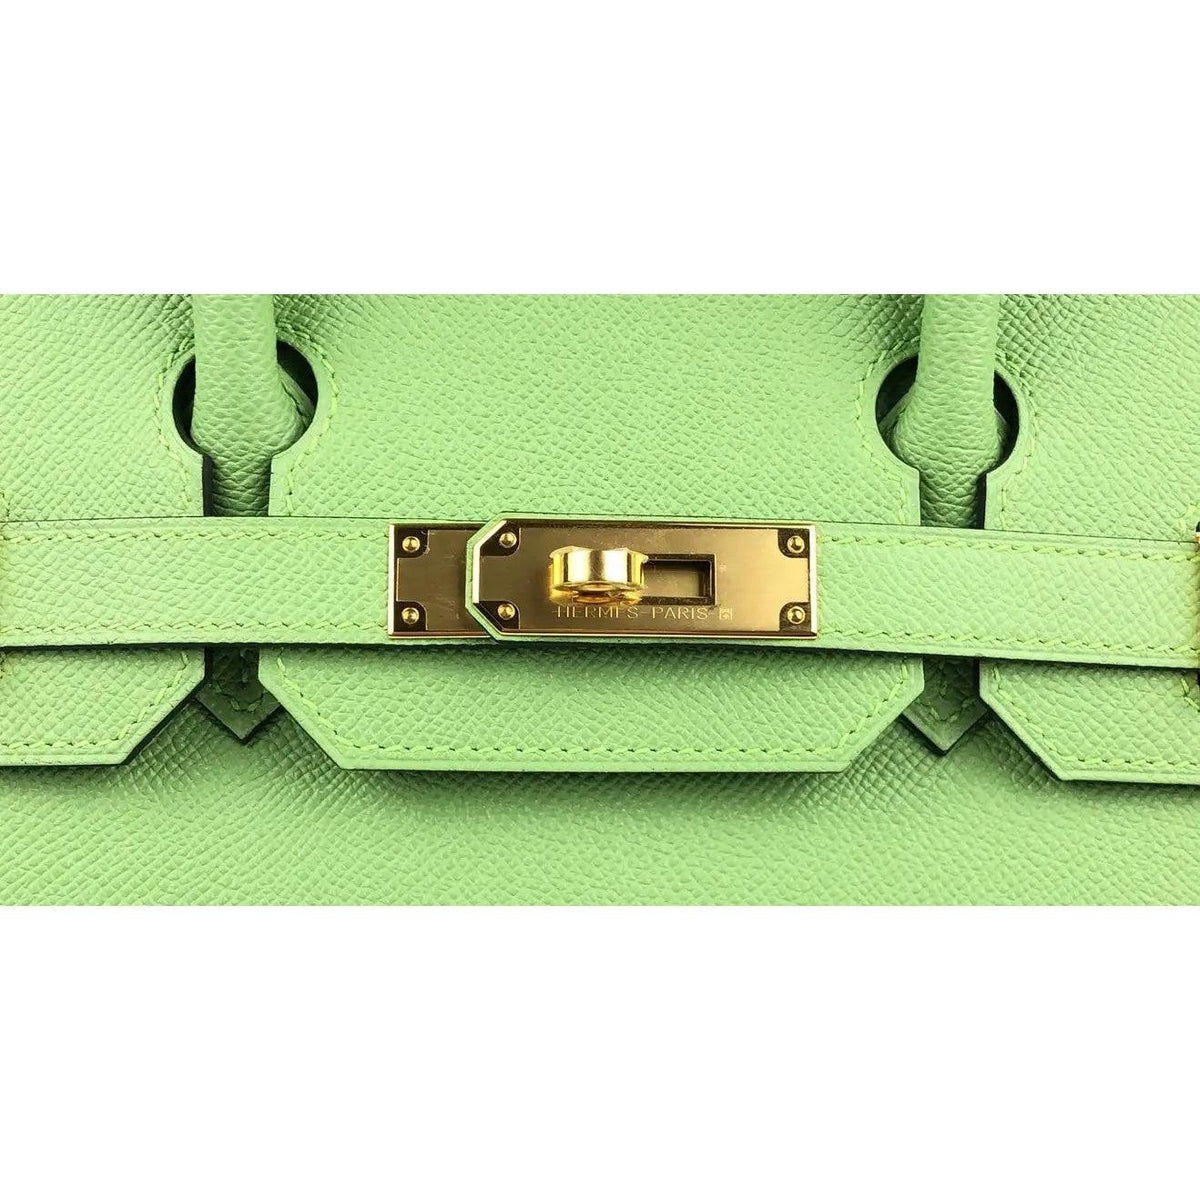 Rare Hermes Birkin 30 Vert Criquet Green Sellier Epsom Leather Bag